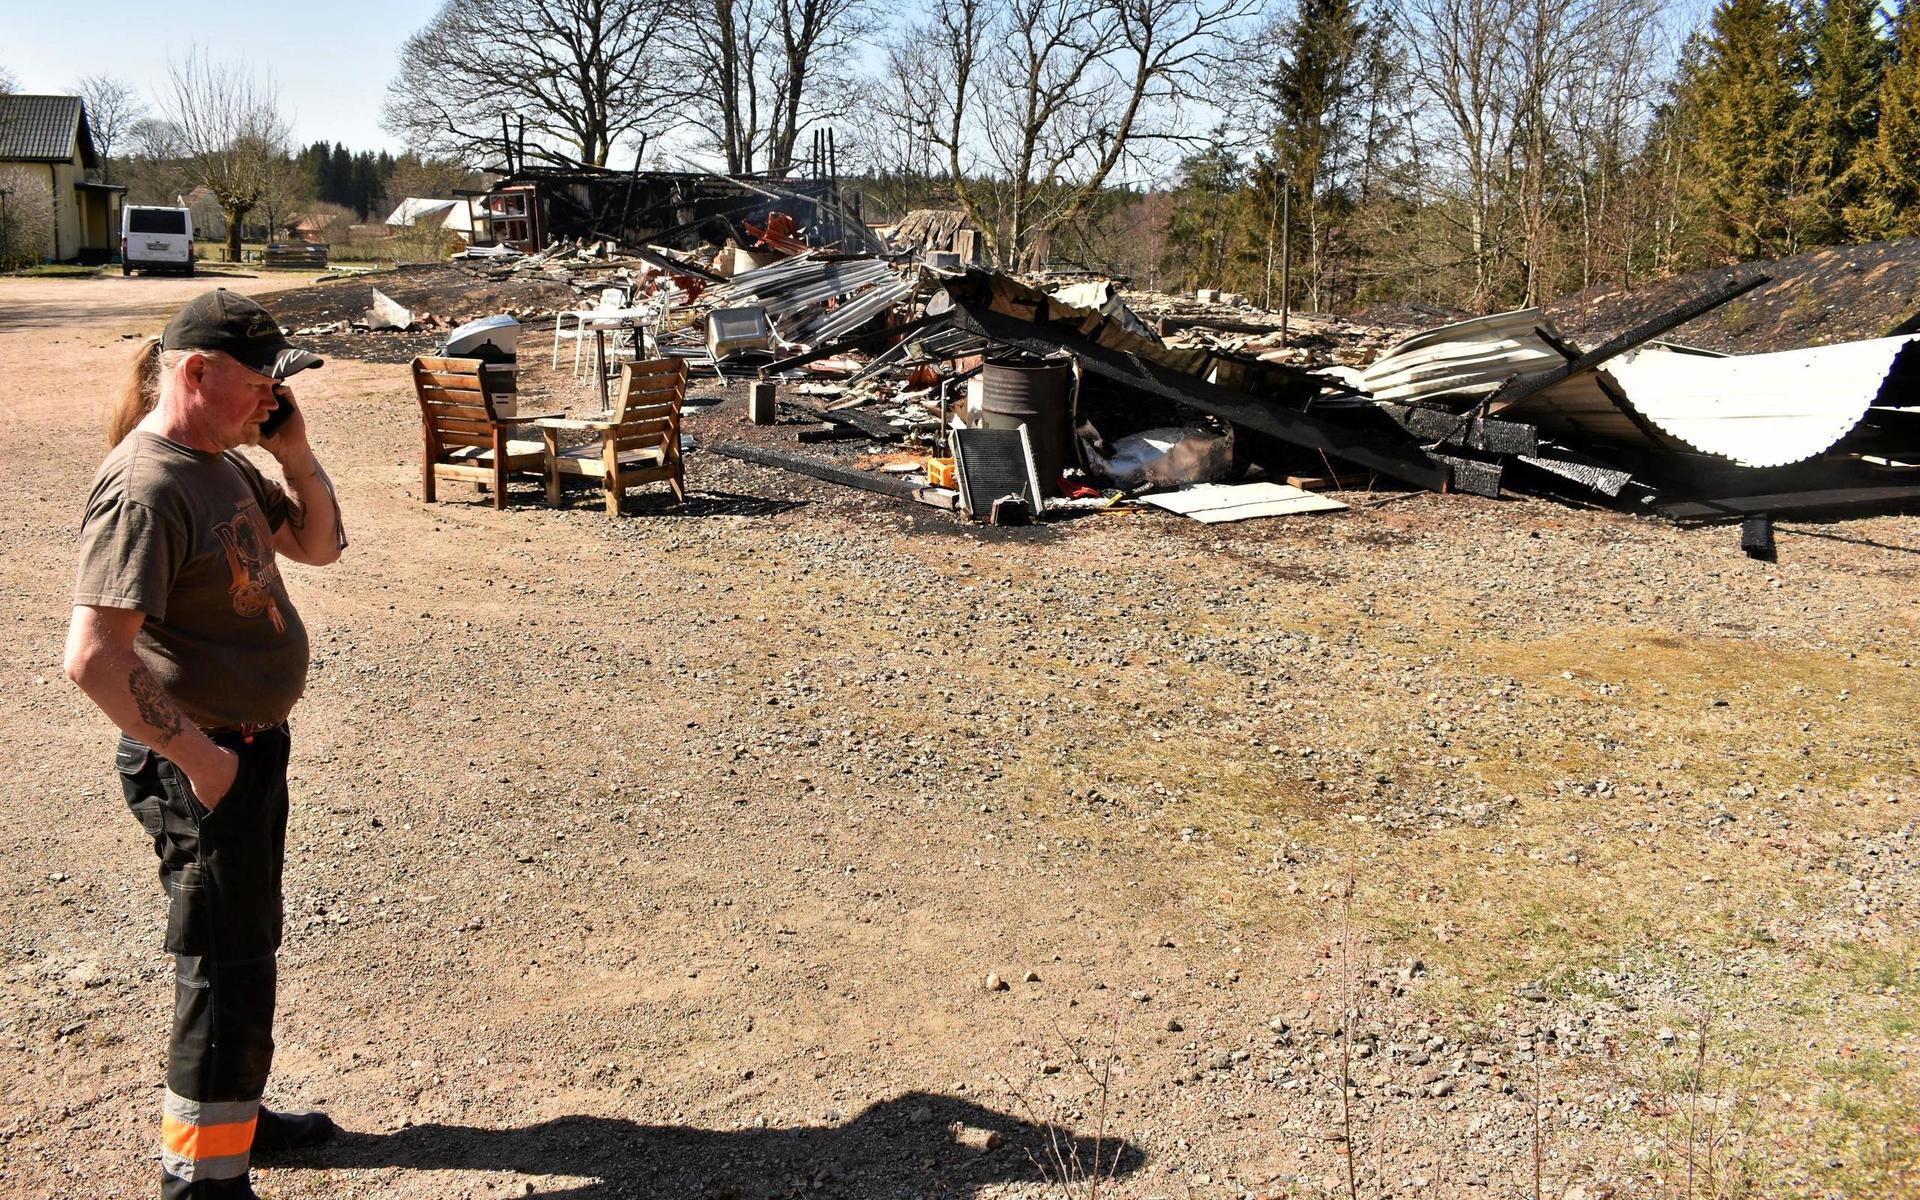 Tony Perssons garage och loppis brann ned under söndagens ladugårdsbrand i Björsjö utanför Kinnared.